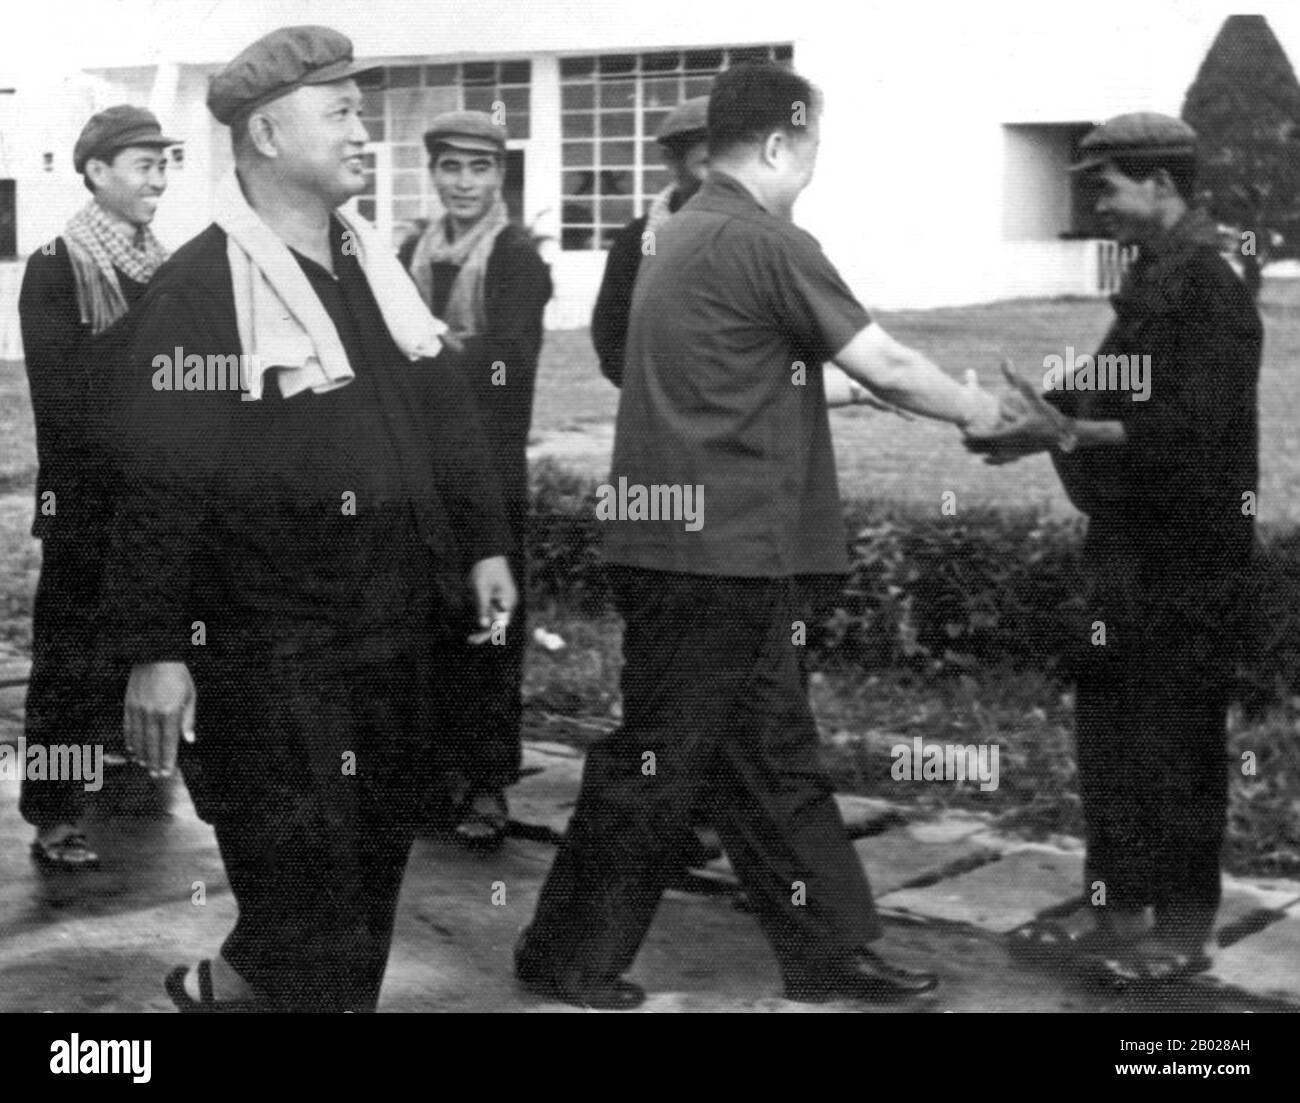 Die Top-Führung der Khmer Rouge Pol Pot (Bruder Nr. 1, Abbieger, Mitte) und Nuon Chea (Bruder Nr. 2, links). Die Khmer Rouge oder die Kommunistische Partei Kampucheas regierten von 1975 bis 1979 Kambodscha, angeführt von Pol Pot, Nuon Chea, Ieng Sary, Son Sen und Khieu Samphan. Man erinnert sich vor allem an seine Brutalität und Politik der Sozialtechnik, die Millionen von Toten zur Folge hatte. Seine Bemühungen um eine Agrarreform führten zu einer weit verbreiteten Hungersnot, während ihr Beharren auf absoluter Selbstversorgung, auch bei der Versorgung mit Medikamenten, zu Tausenden Todesfällen bei behandelbaren Krankheiten (wie Malaria) führte. Stockfoto